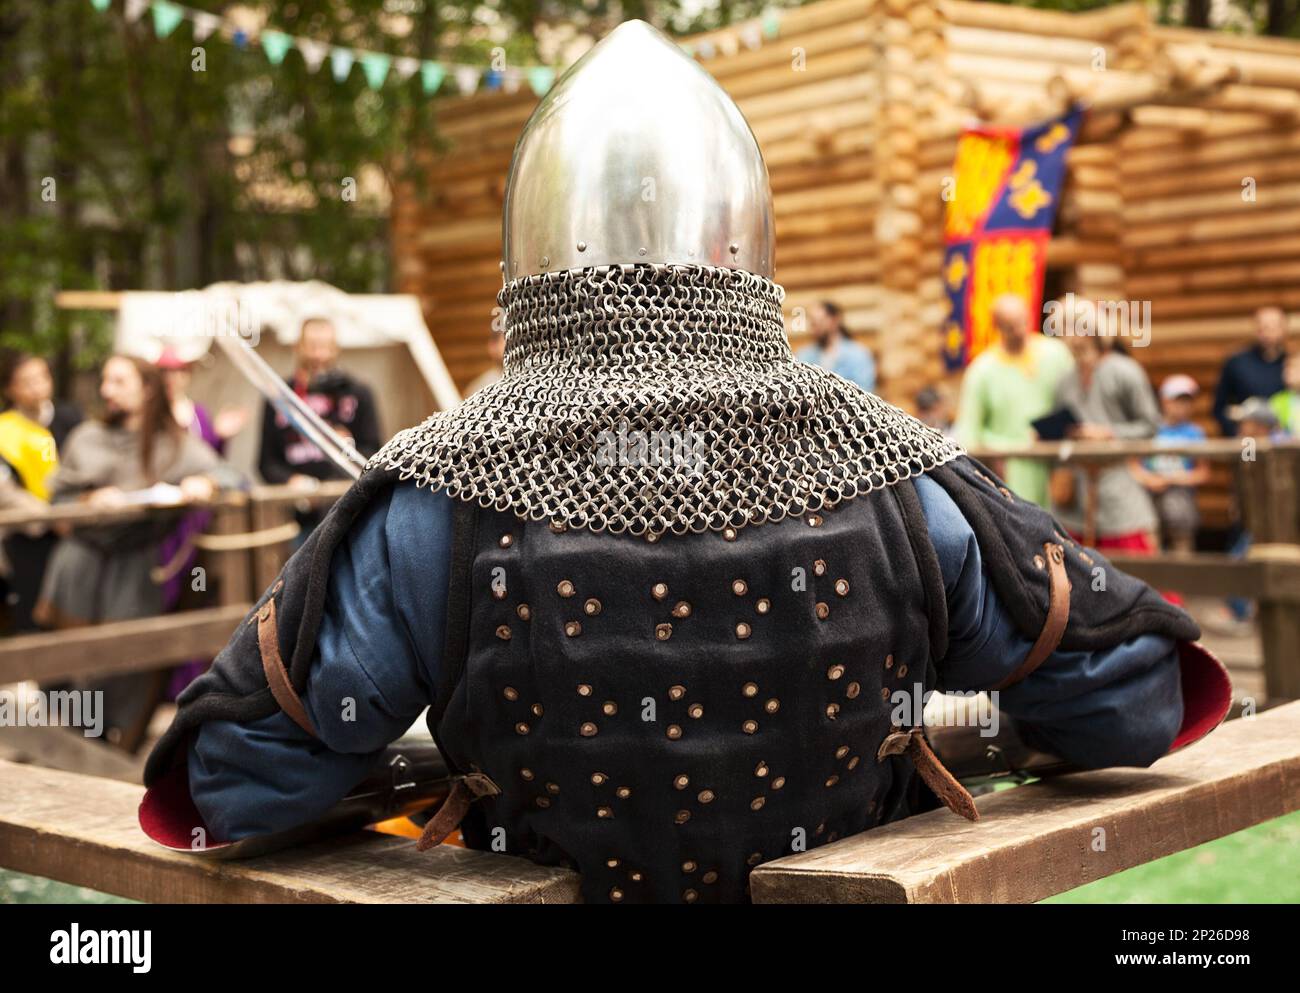 Mittelalter Kostümen am Ritterturnier. Mittelalterliche historisches Reenactment - ein Mann mit Metall Helm mit Aventail Rückansicht Stockfoto